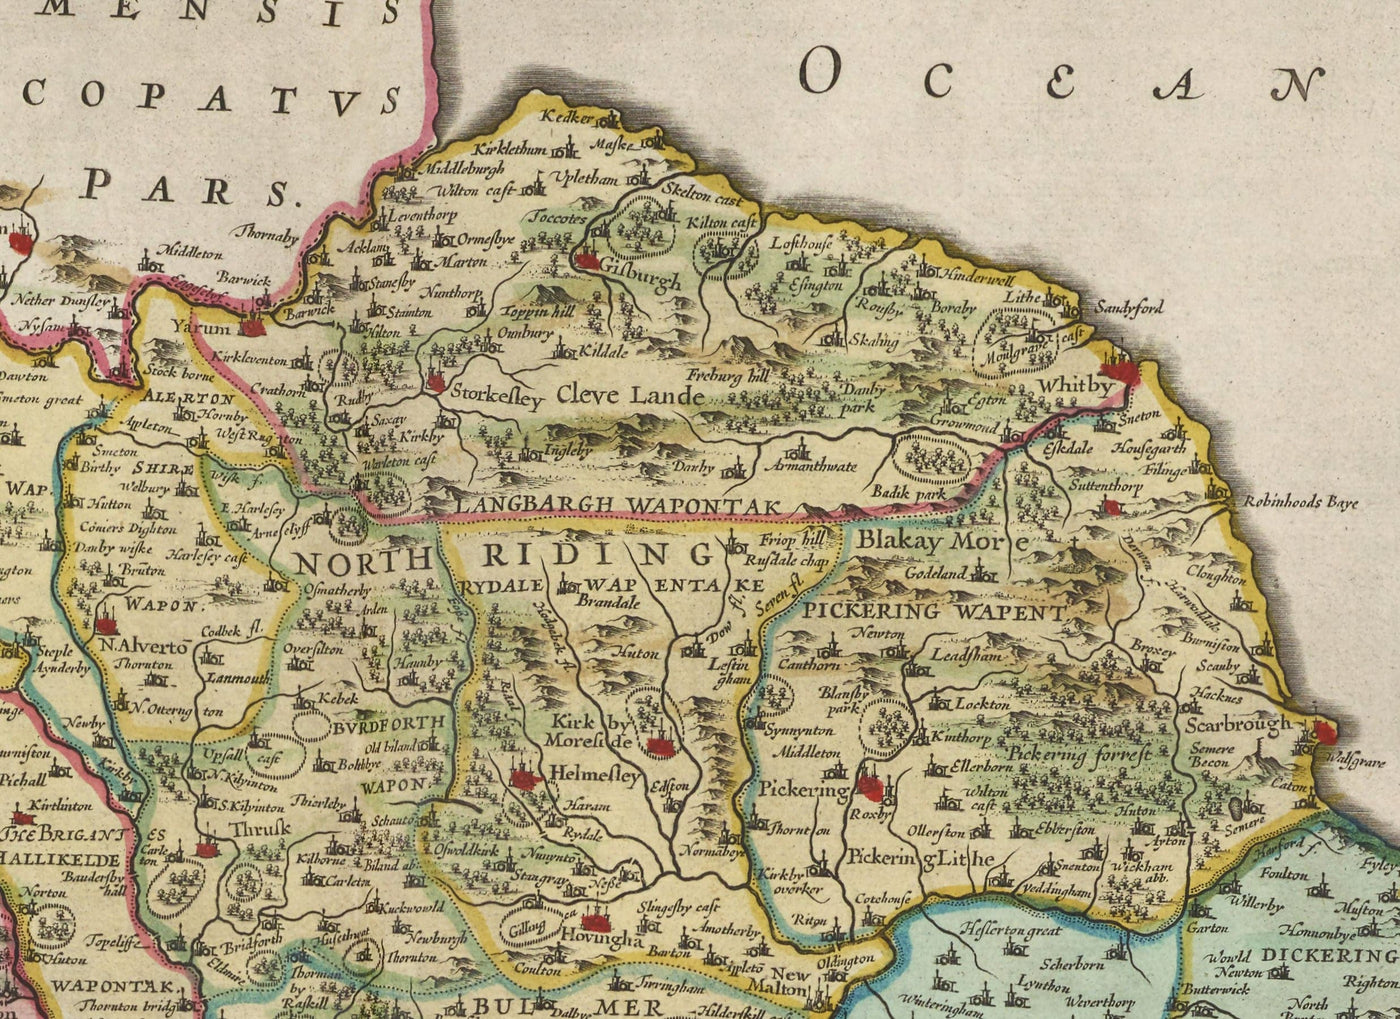 Alte Karte von Yorkshire im Jahre 1654 von Joan Blaeu - York, Bradford, Sheffield, Leeds, Middlesbrough, Harrogate